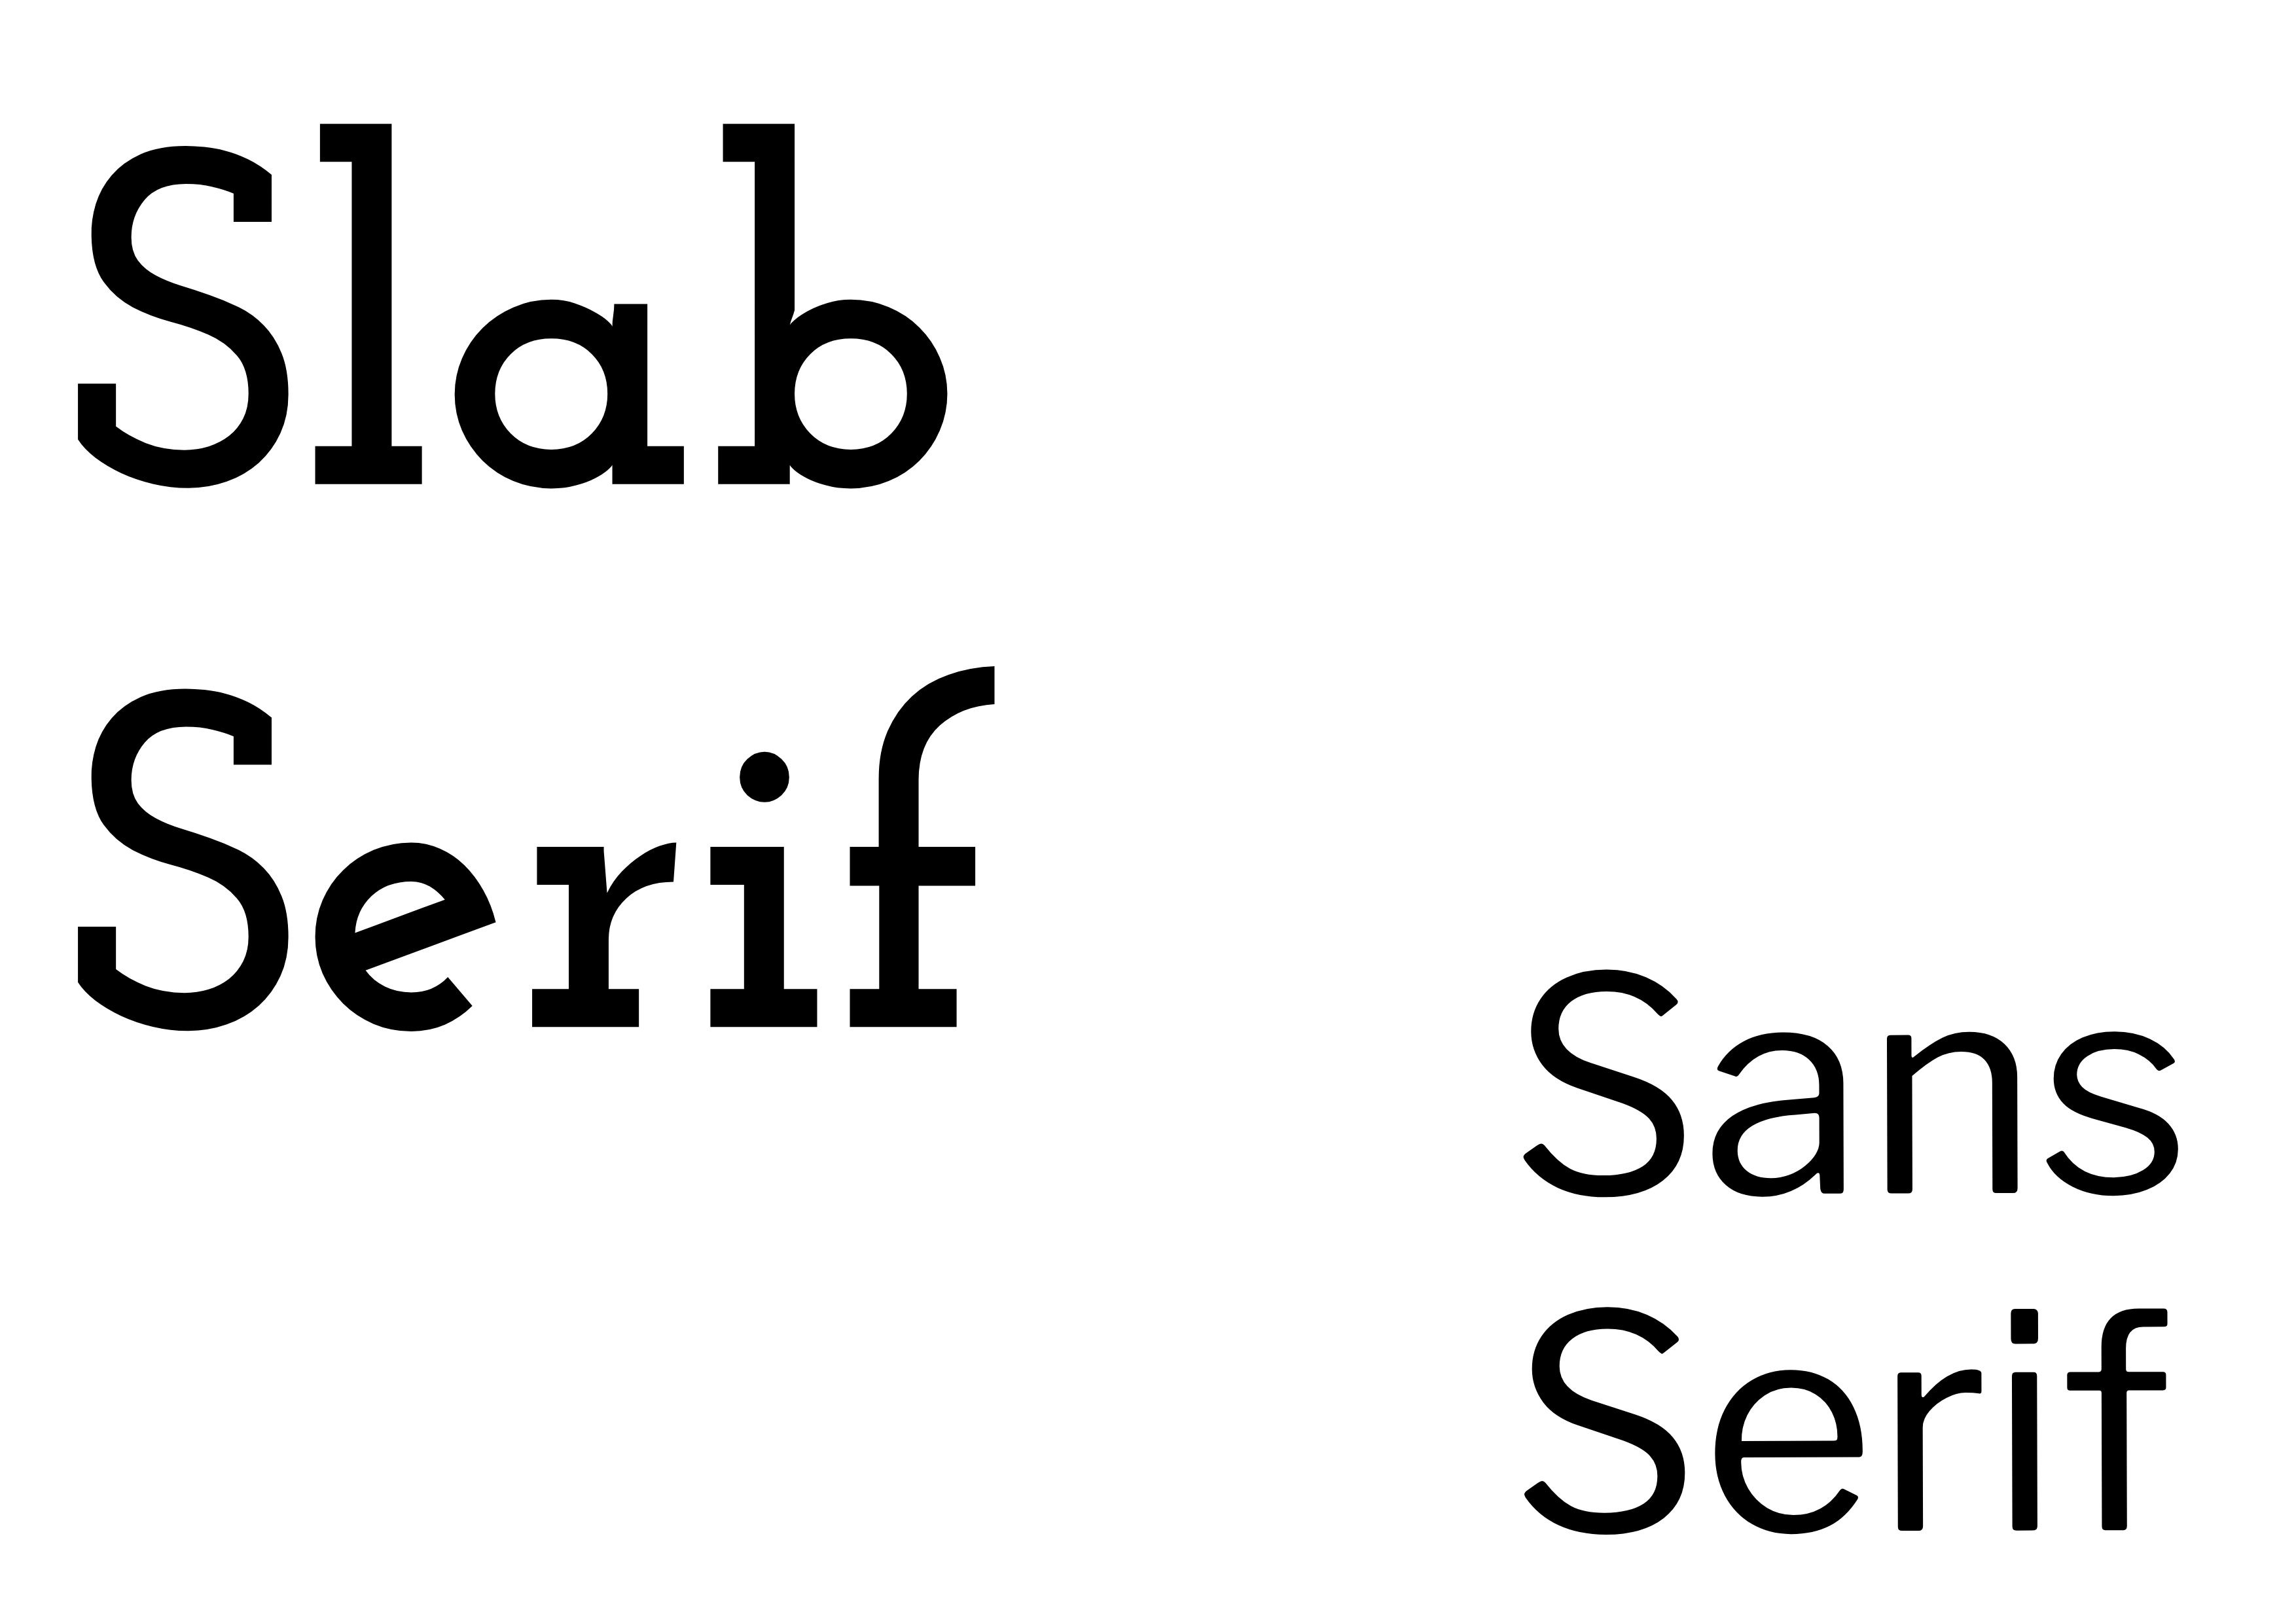 Schriftarten-Kombination - 'Slab Serif' fett in Schwarz links mit 'Sans Serif' in Schwarz, kleiner rechts - Der komplette Leitfaden zu Schriftarten: 5 wesentliche Schriftarten-Typen in der Typografie - Bild